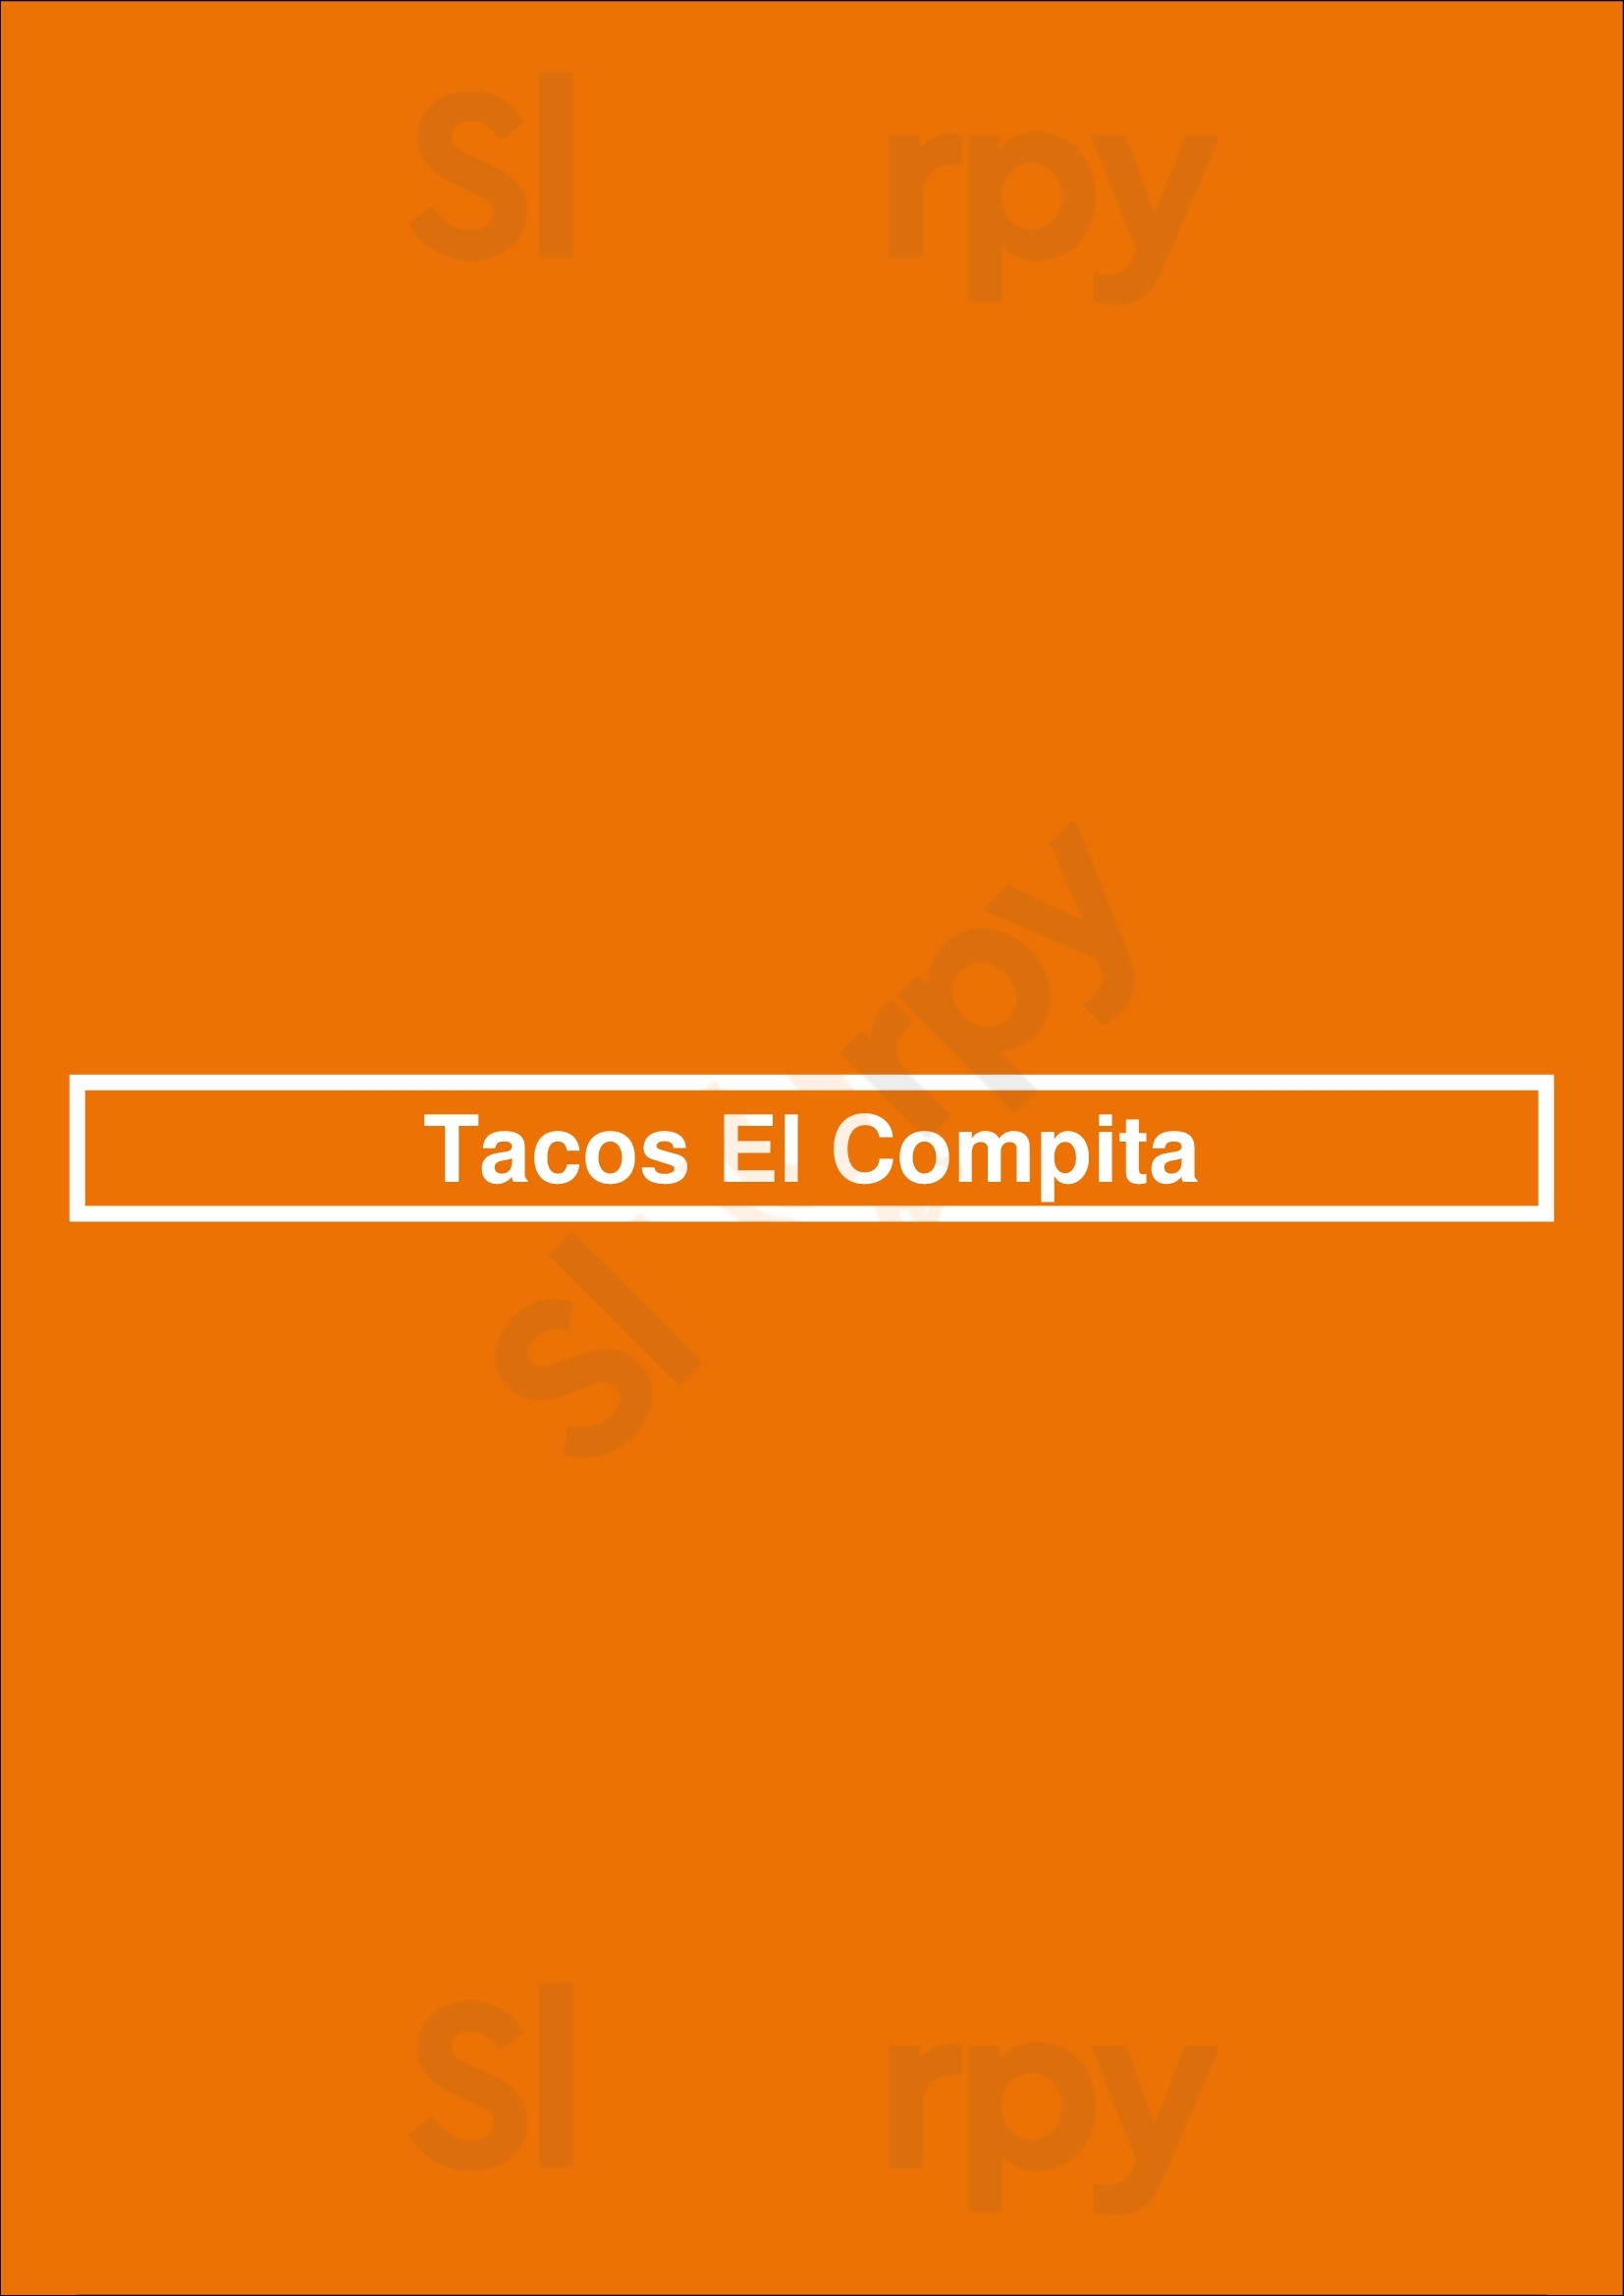 Tacos El Compita Los Angeles Menu - 1